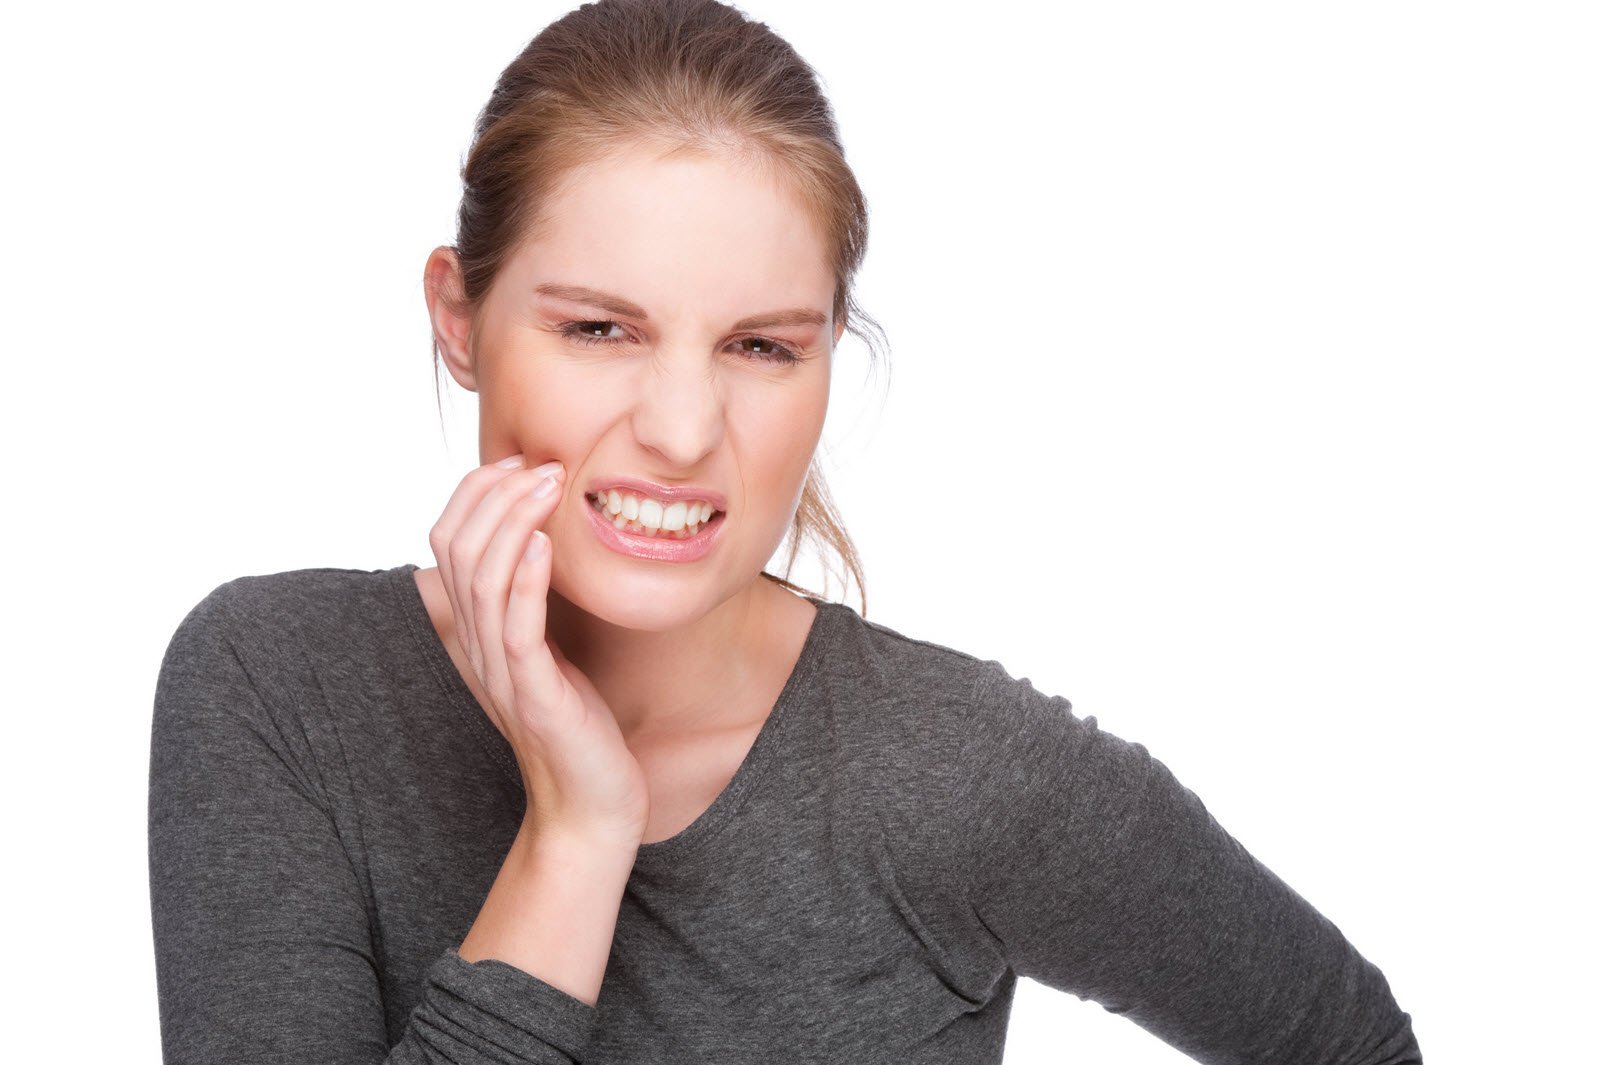 Сильно болит зуб, что делать? Советы газеты Вестник ЗОЖ